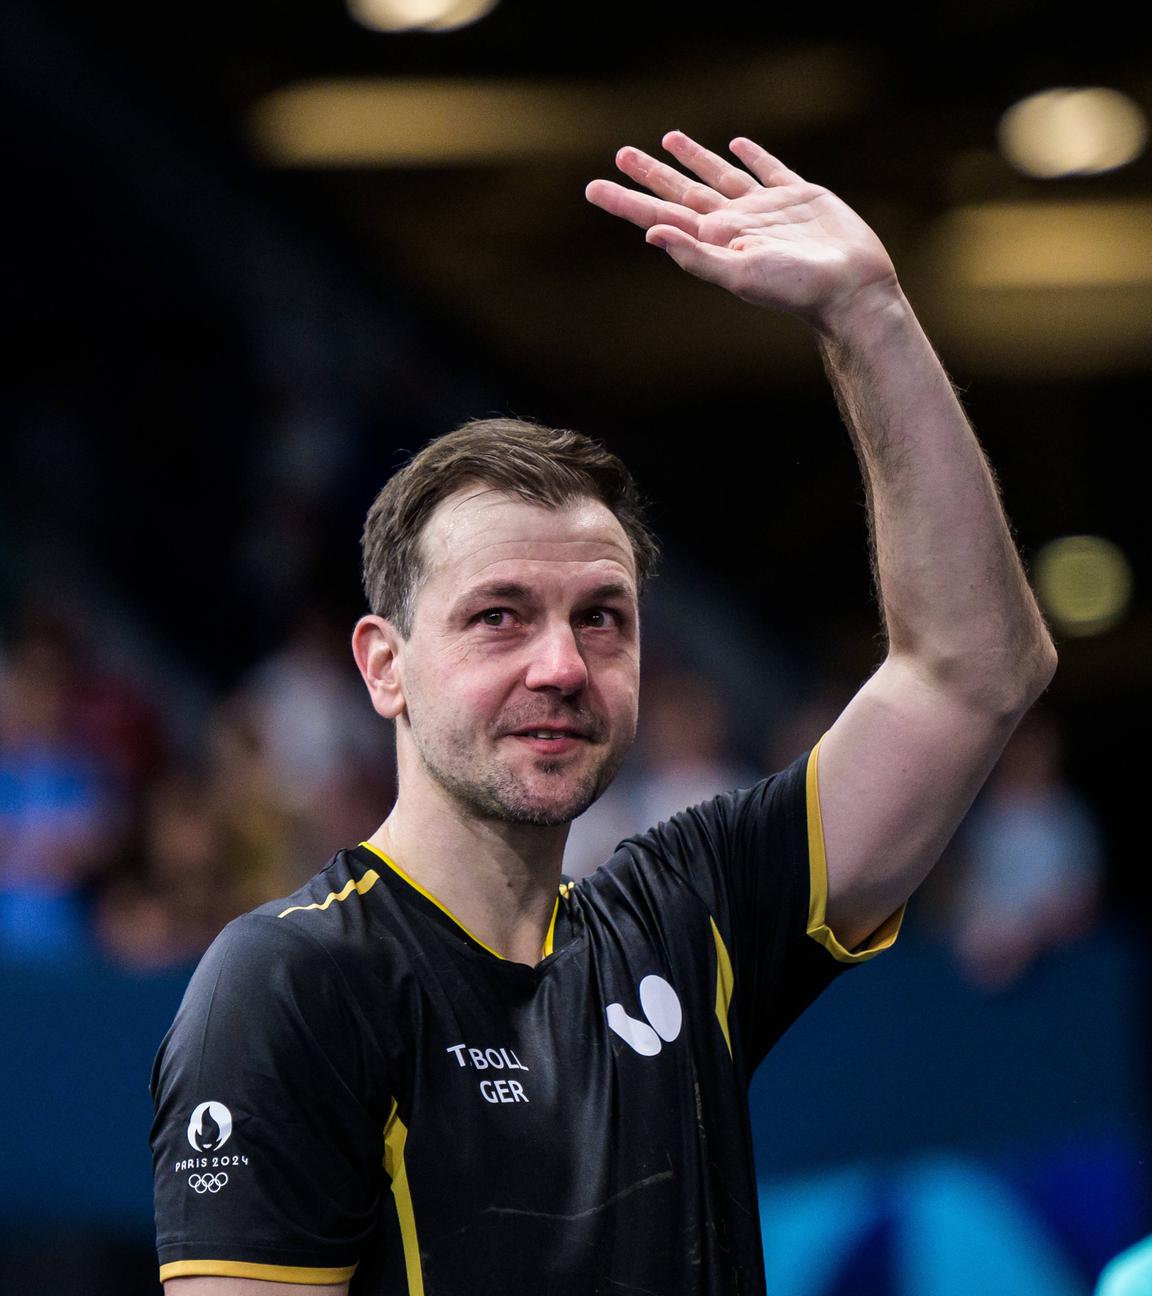 Tischtennislegende Timo Boll beendet seine internationale Karriere und verlässt weinend das Feld nachdem er das Viertelfinale gegen Schweden verliert.